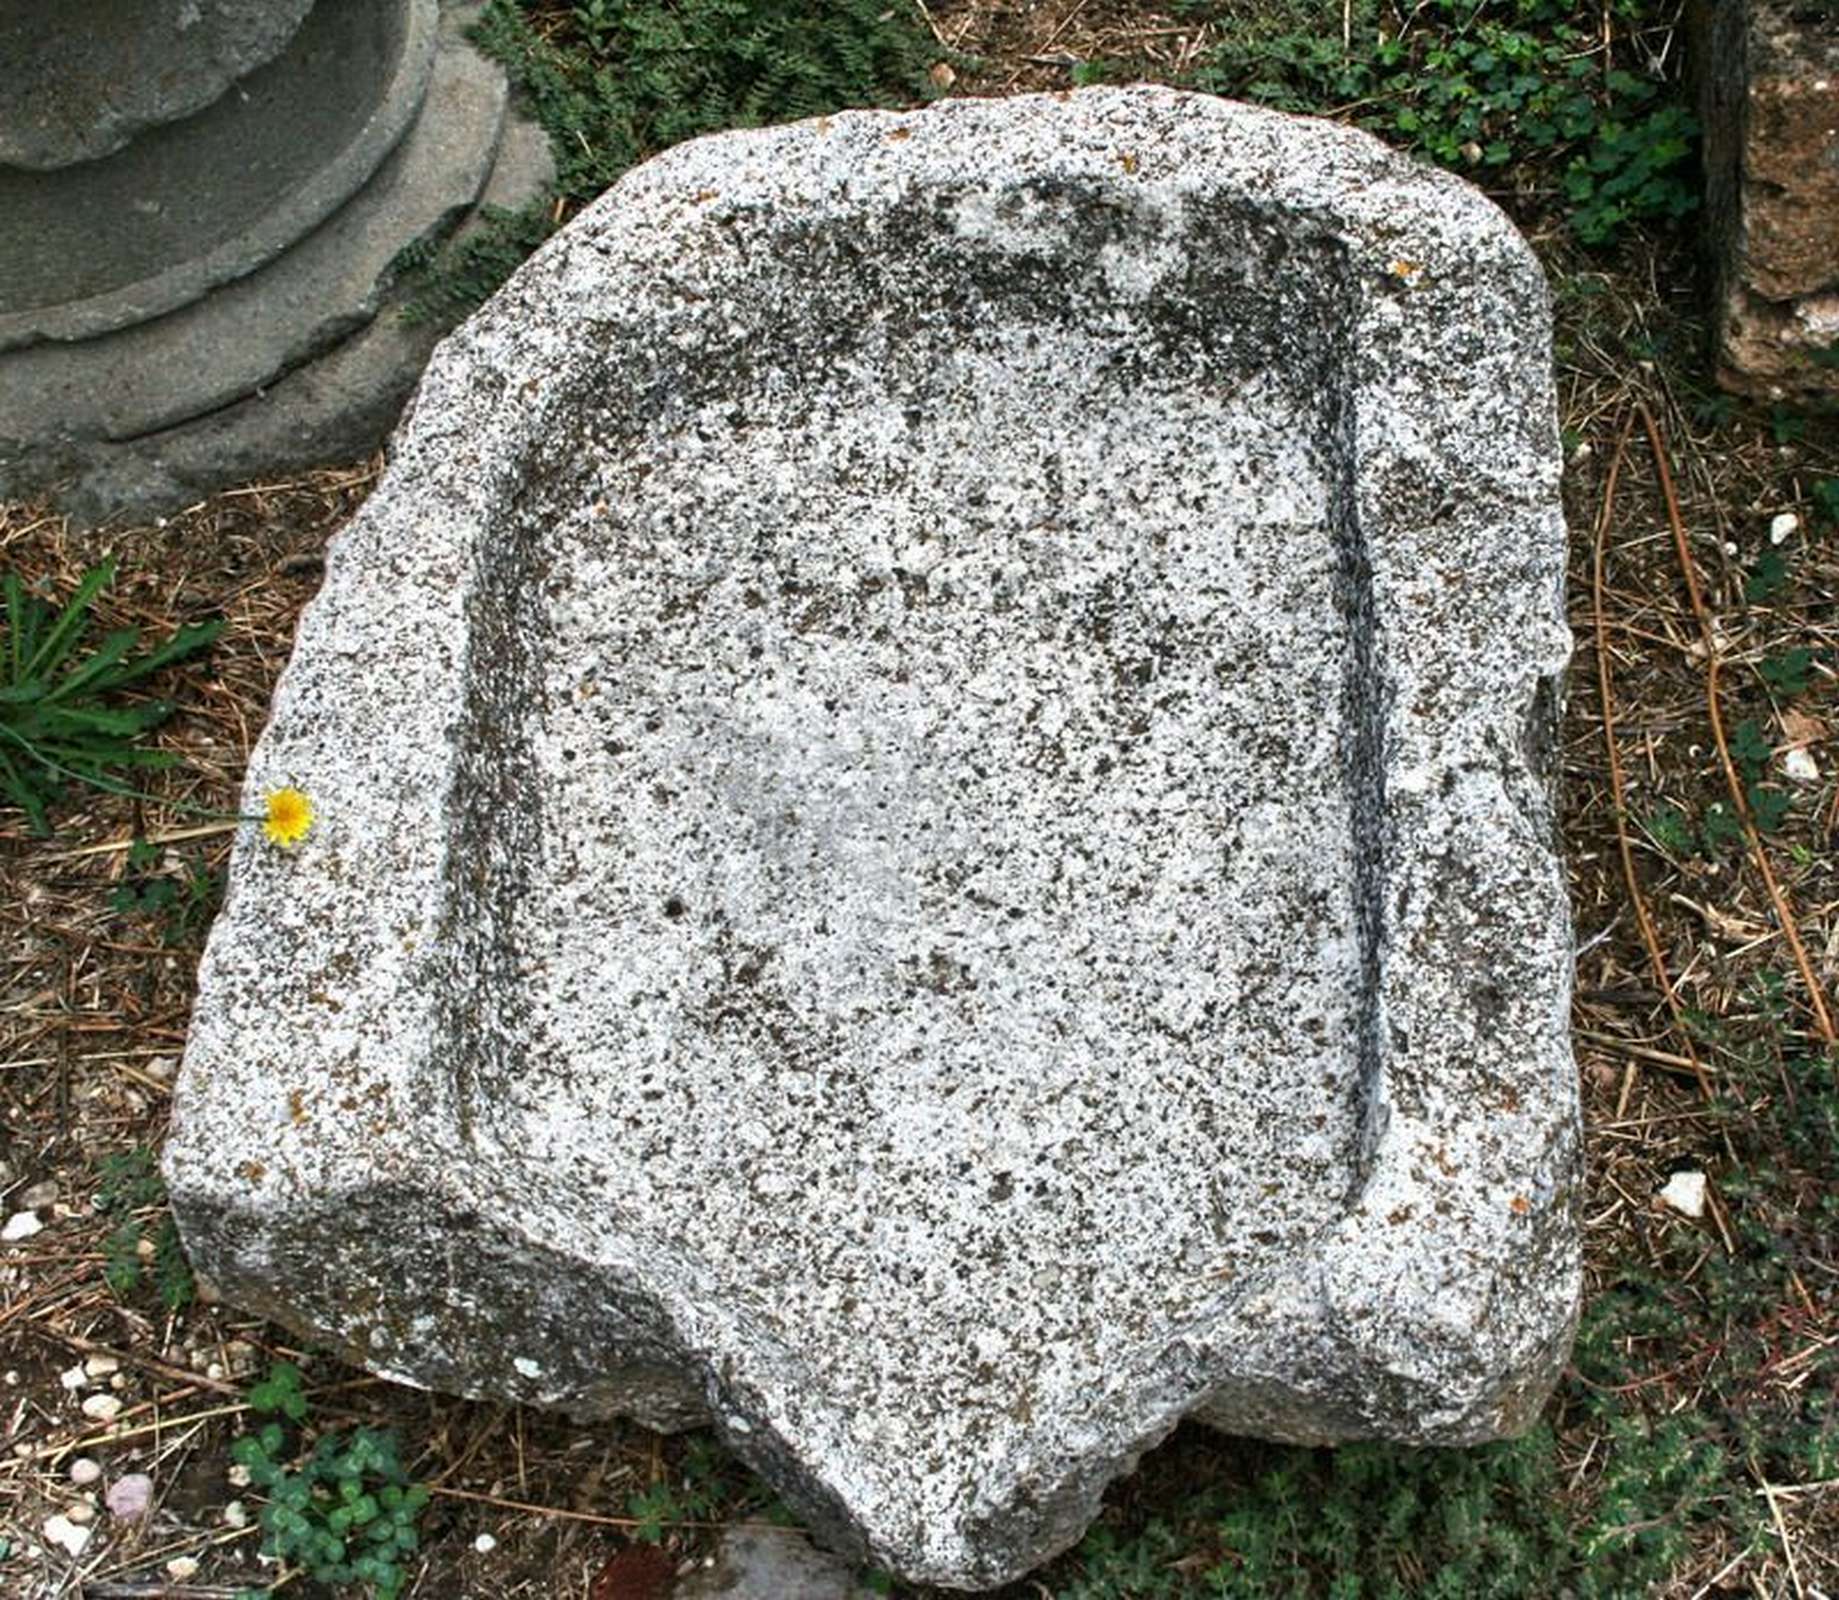 Antico sgocciolatoio in pietra - Vasche - Arredo Giardino - Prodotti - Antichità Fiorillo